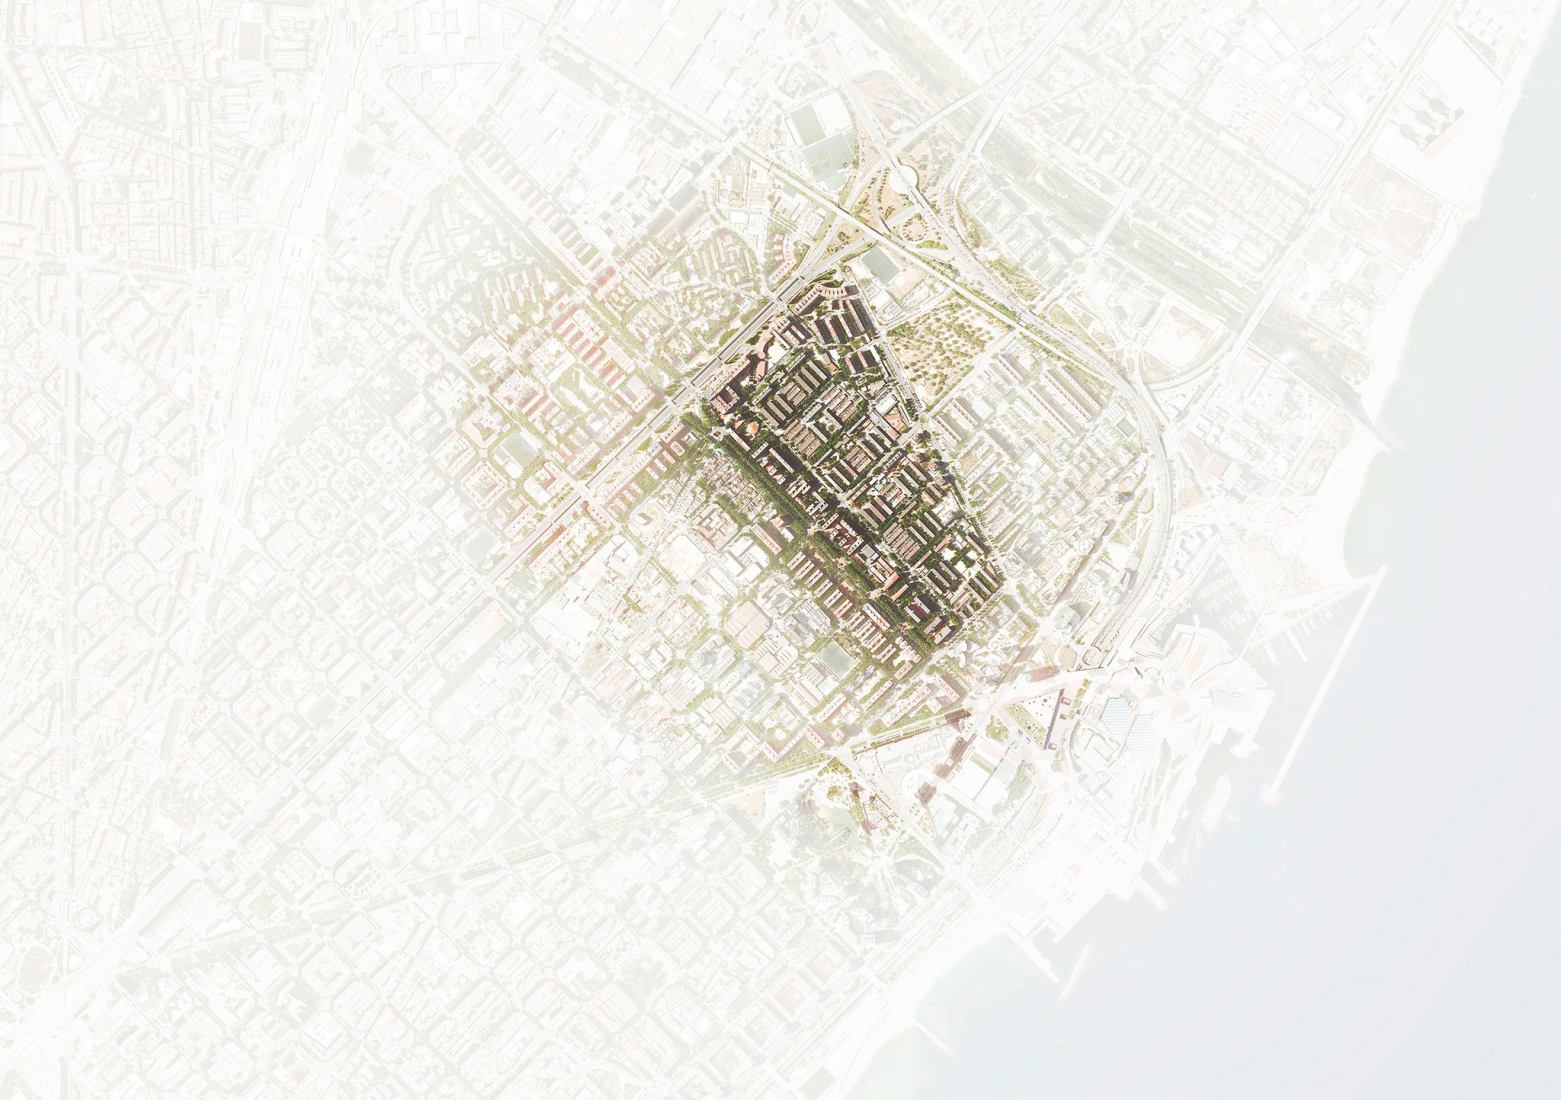 Sistema abierto para la regeneración urbana de urbanizaciones: un caso de estudio en Barcelona por REARQ UPC.